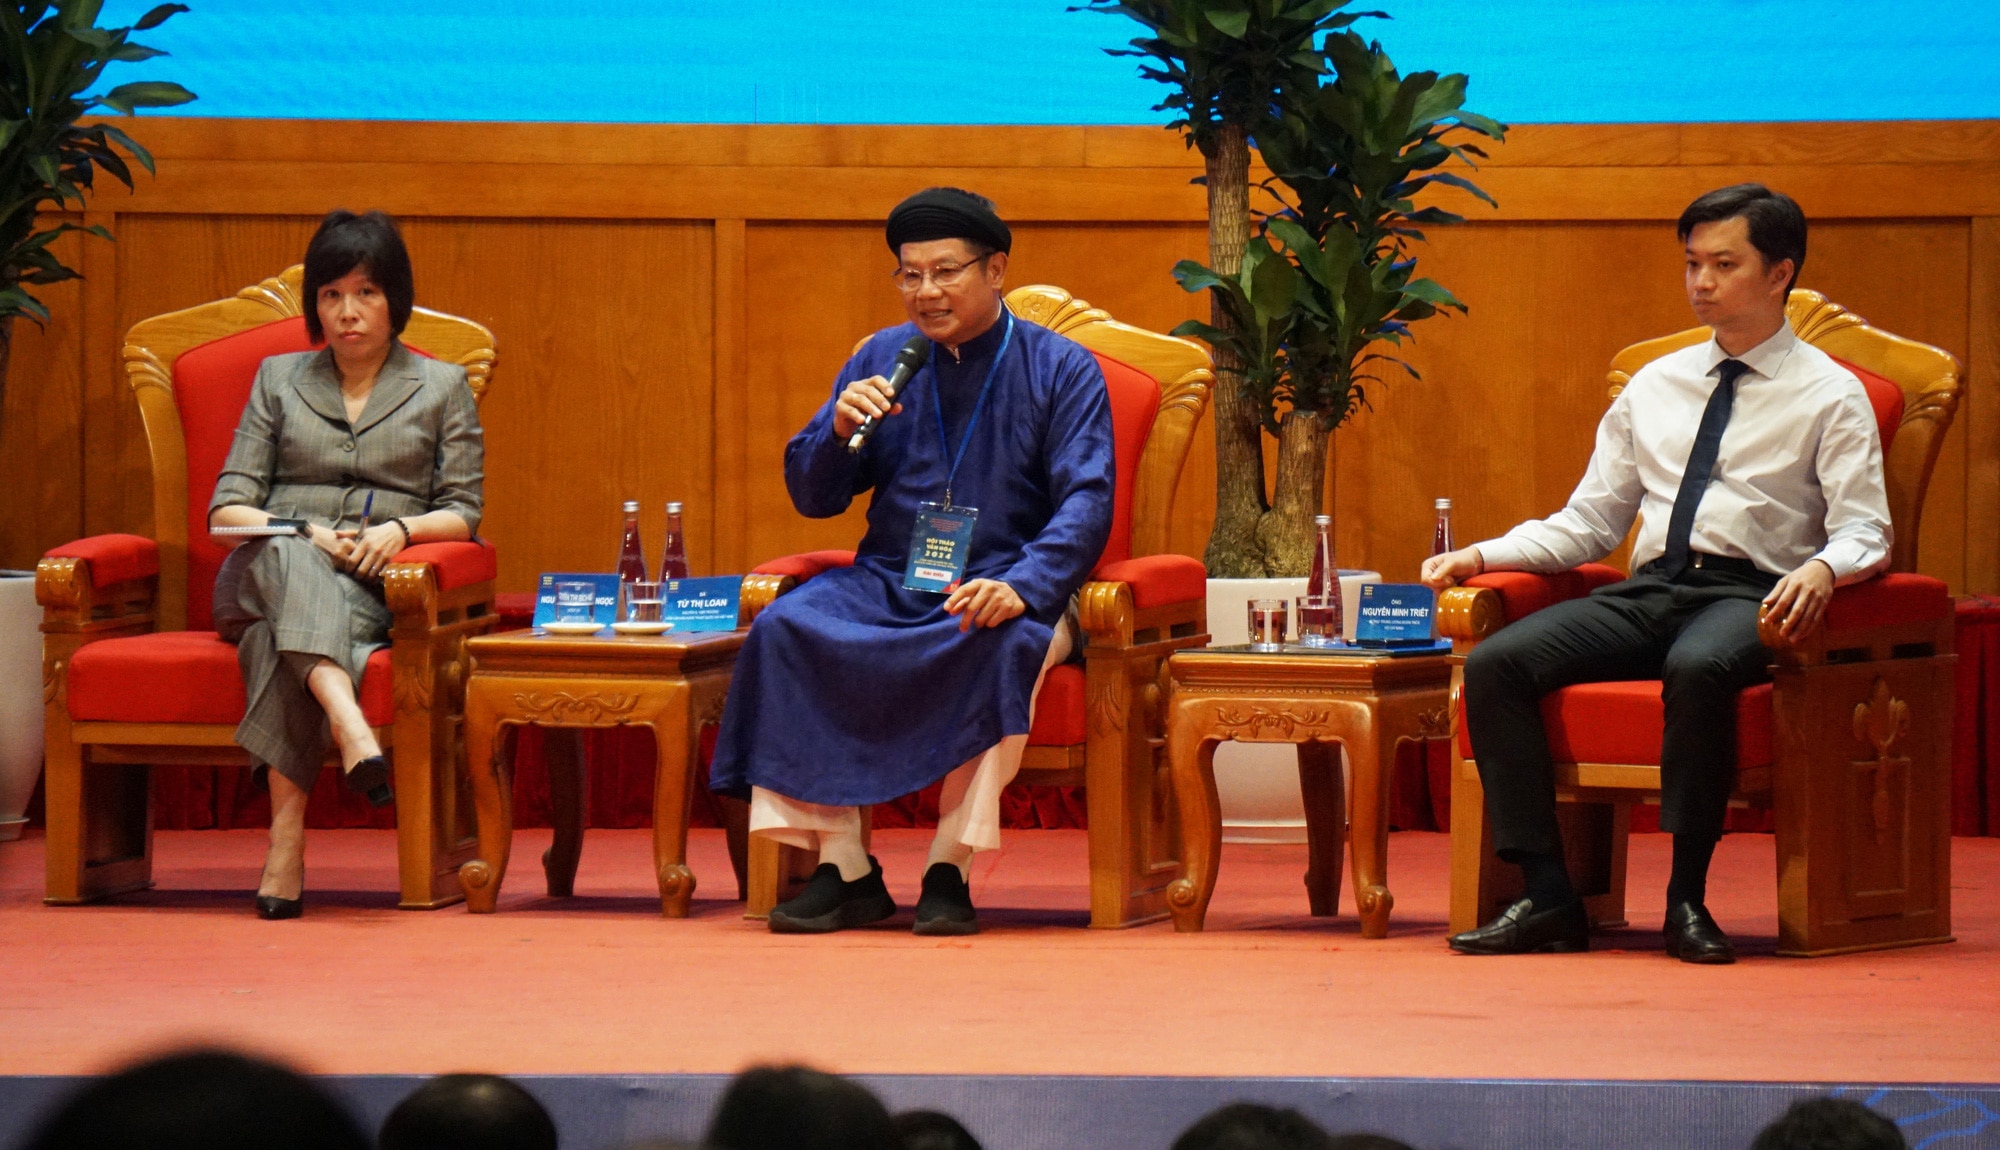 Giám đốc Sở Văn hóa và Thể thao tỉnh Thừa Thiên Huế Phan Thanh Hải chia sẻ những khó khăn trong cơ chế chính sách về thuê đất trong phát triển bảo tàng tư nhân - Ảnh: T. THẮNG